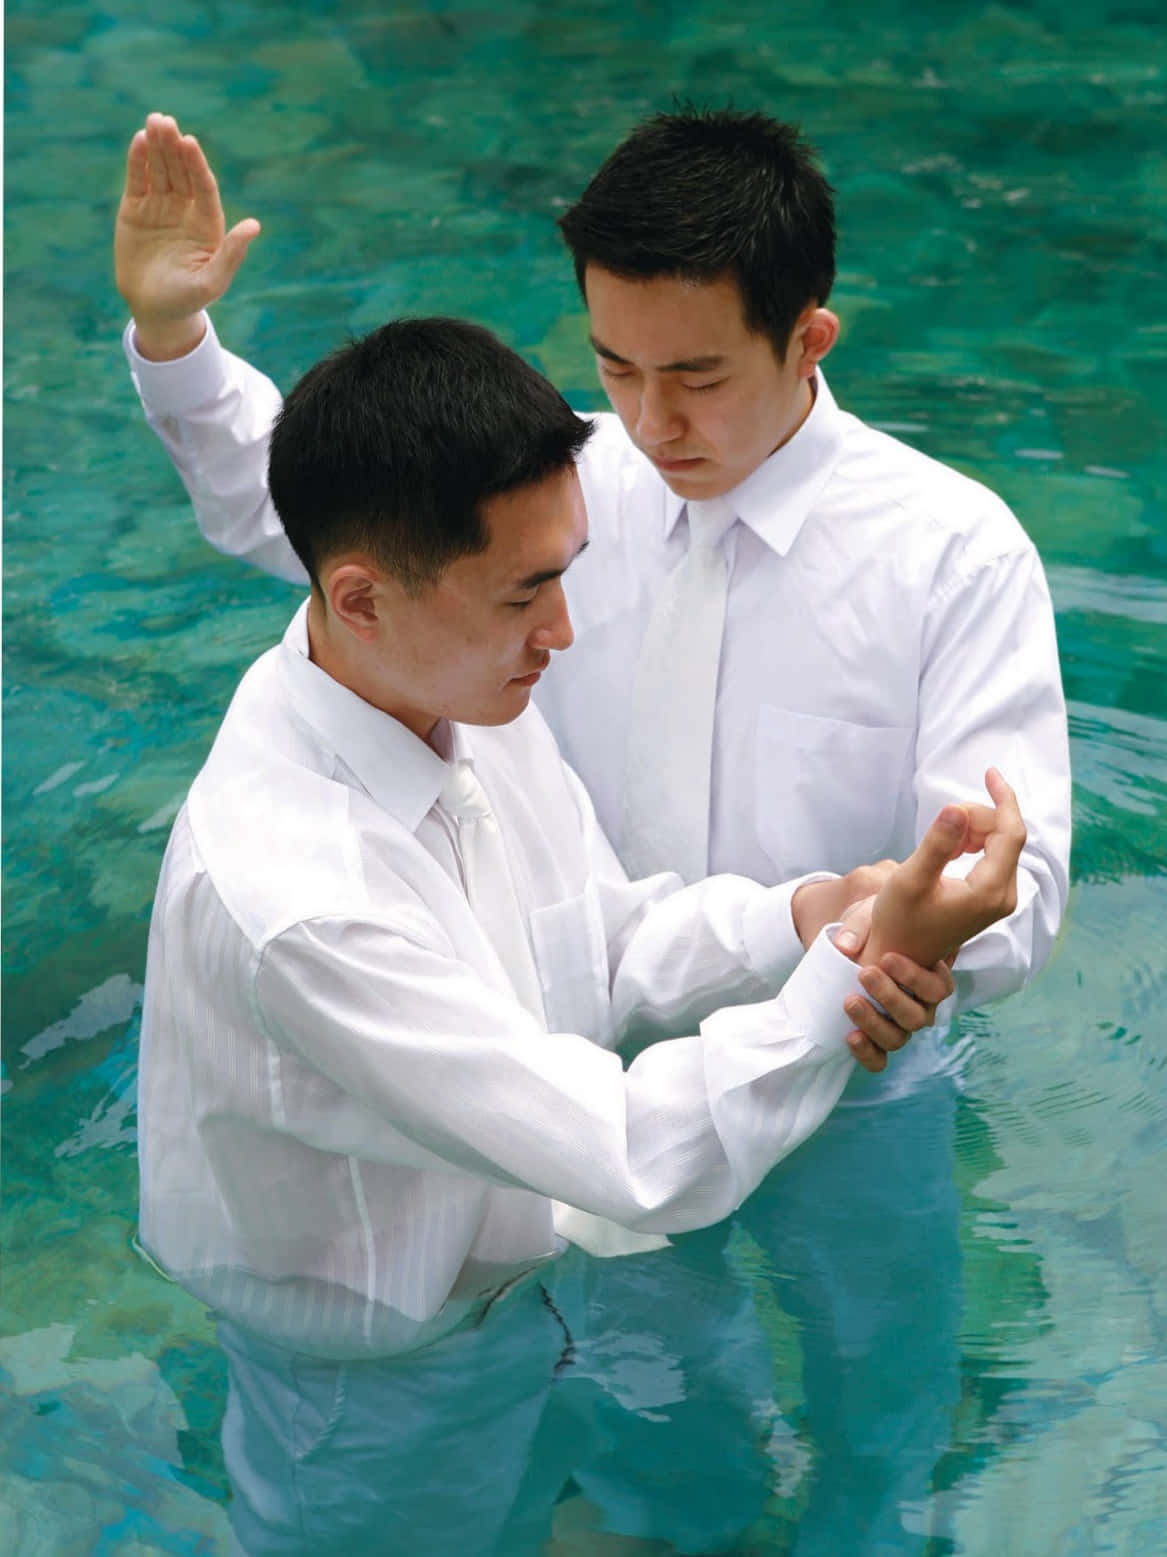 Unsimbolo Di Nuovi Inizi, Il Battesimo È Un Atto Sacro Di Fede